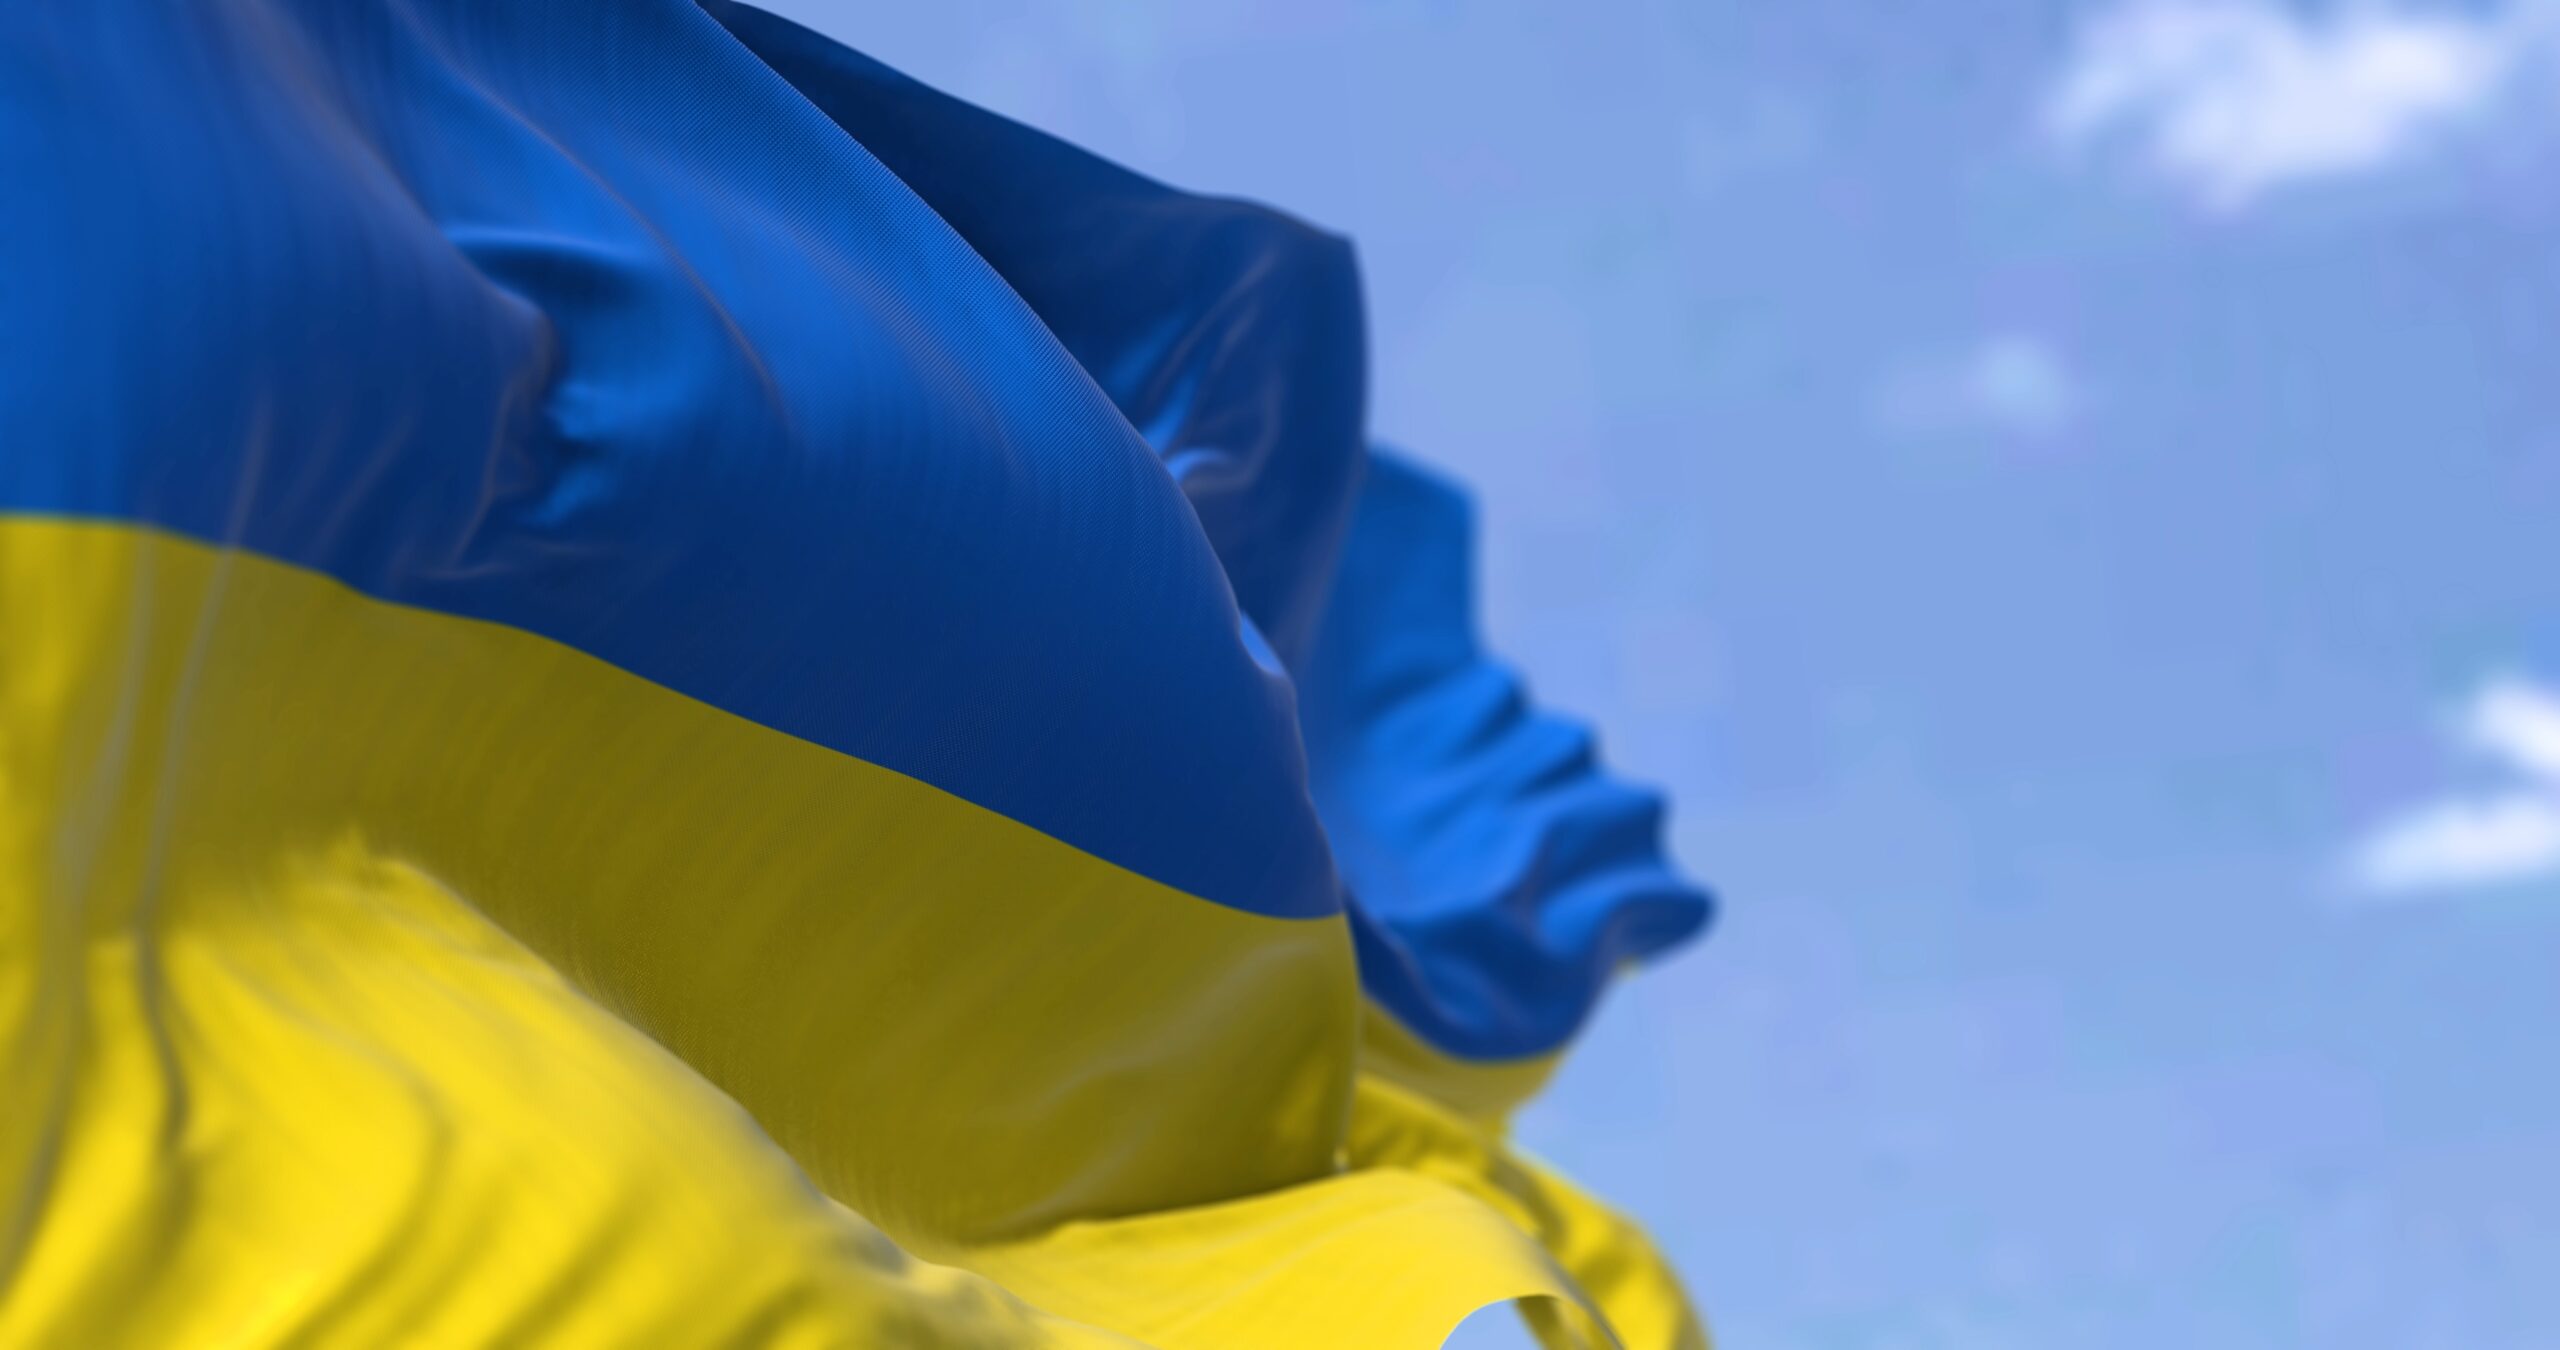 Krieg in der Ukraine: Unsere Haltung und Massnahmen